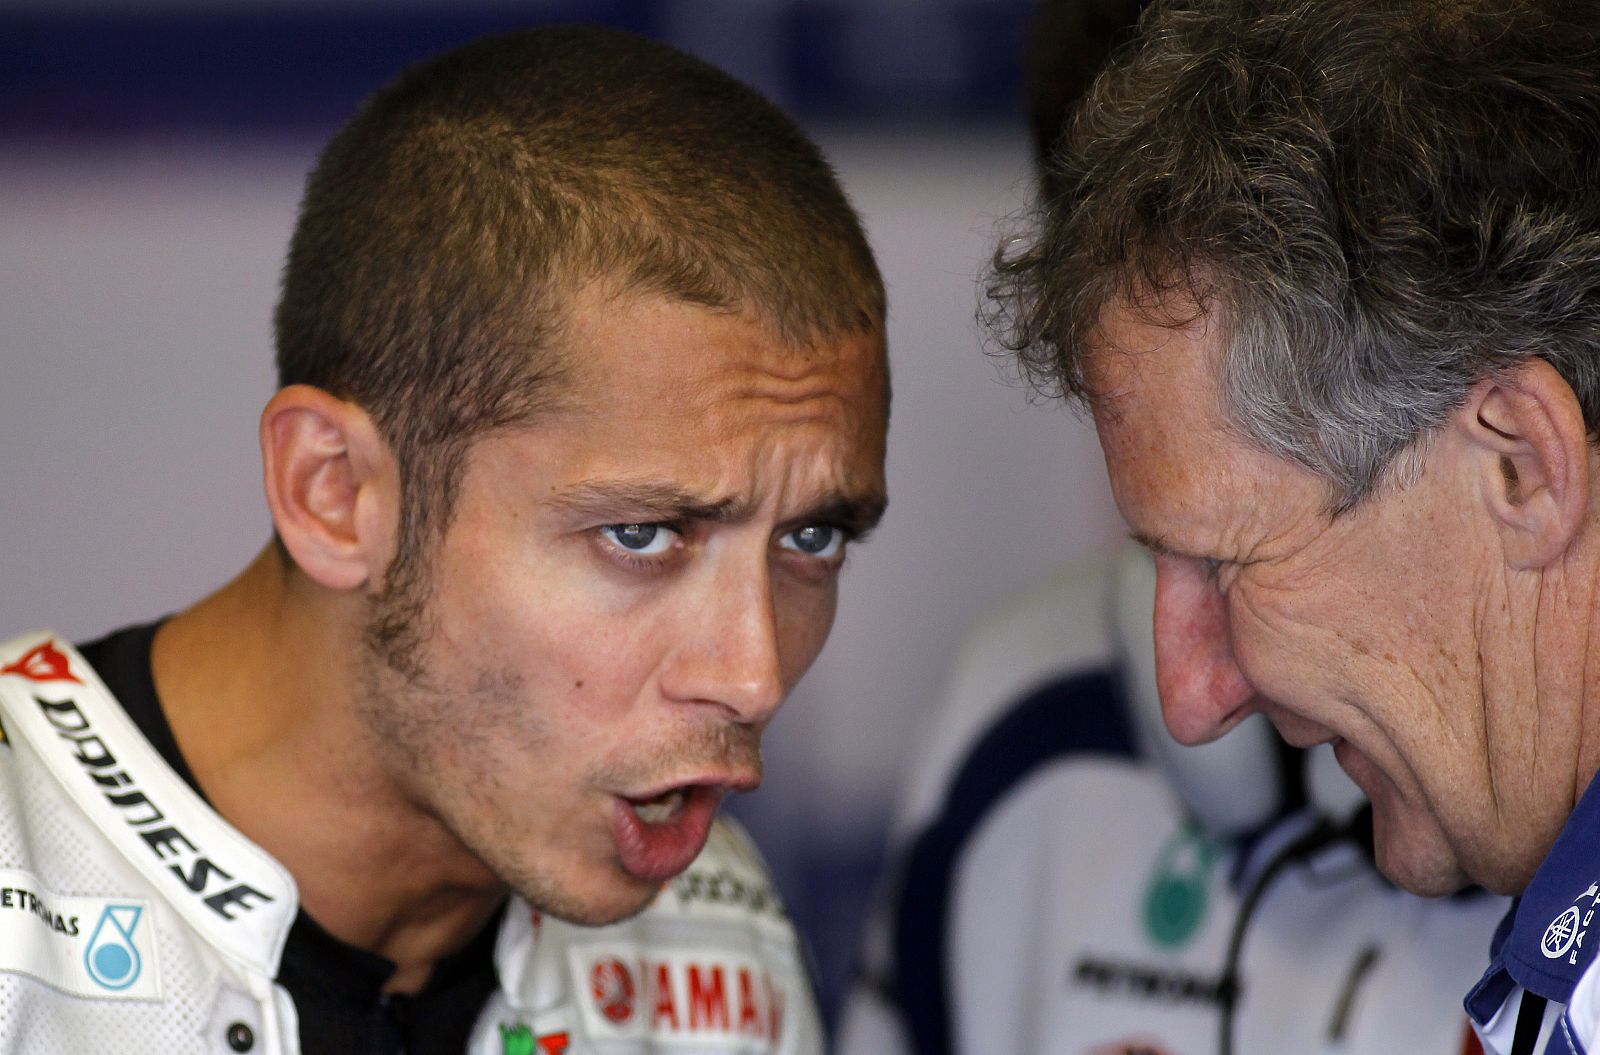 El jefe de mecánicos de Rossi, Jeremy Burgess, responderá a las preguntas de 'Paddock GP'.